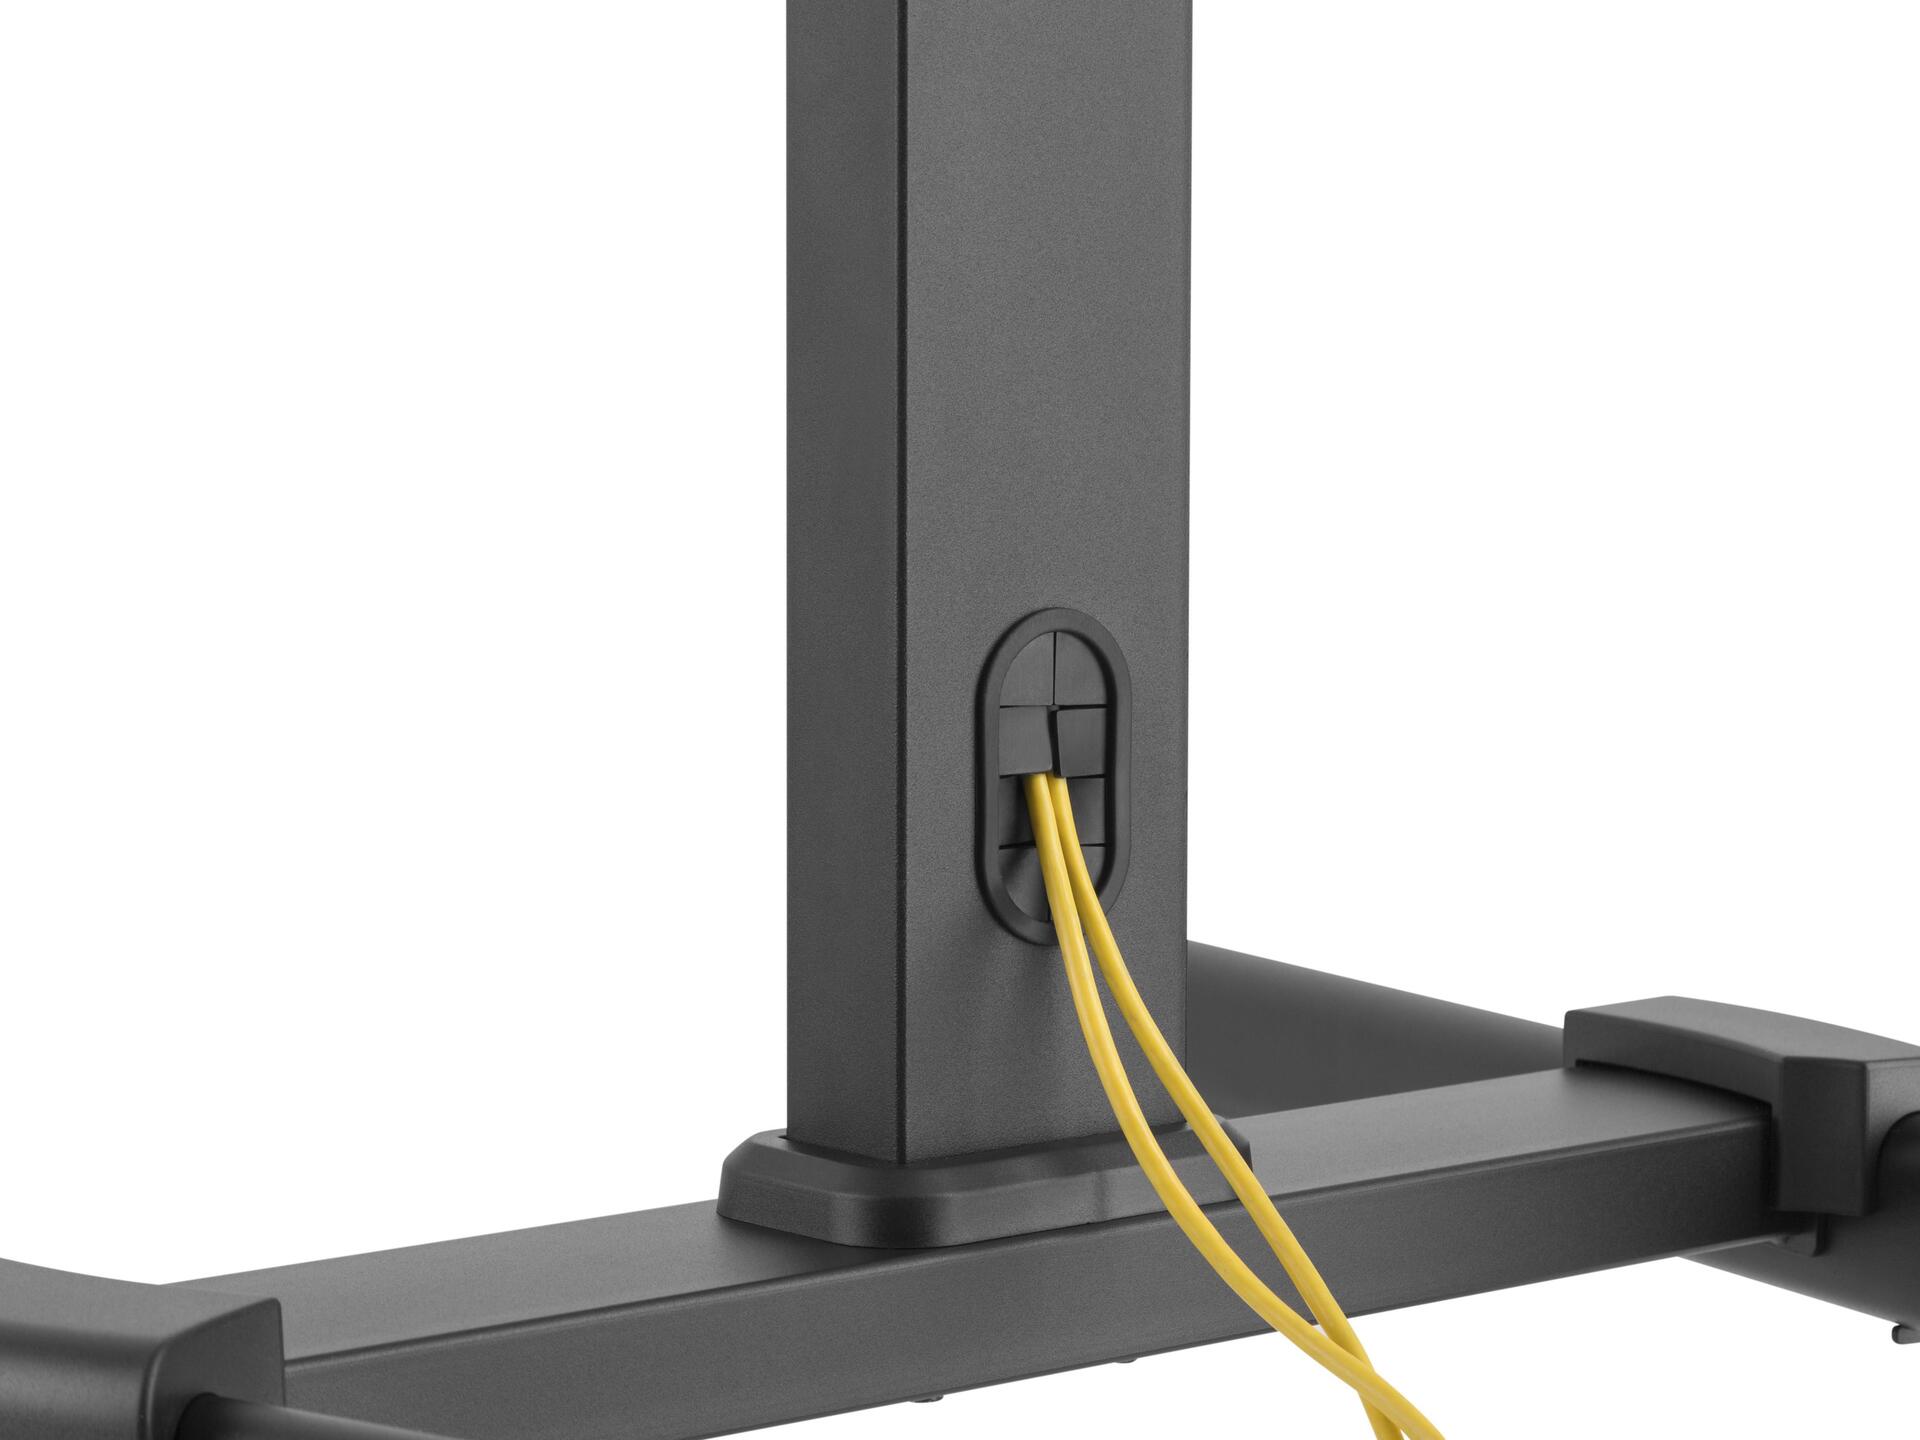 Image of Equip Pro articulating Dual Monitor Desk Mount Bracket - Universal - Wagen für LCD TV - Kunststoff, Stahl - Schwarz - Bildschirmgröße: 81.3-139.7 cm (32-55)